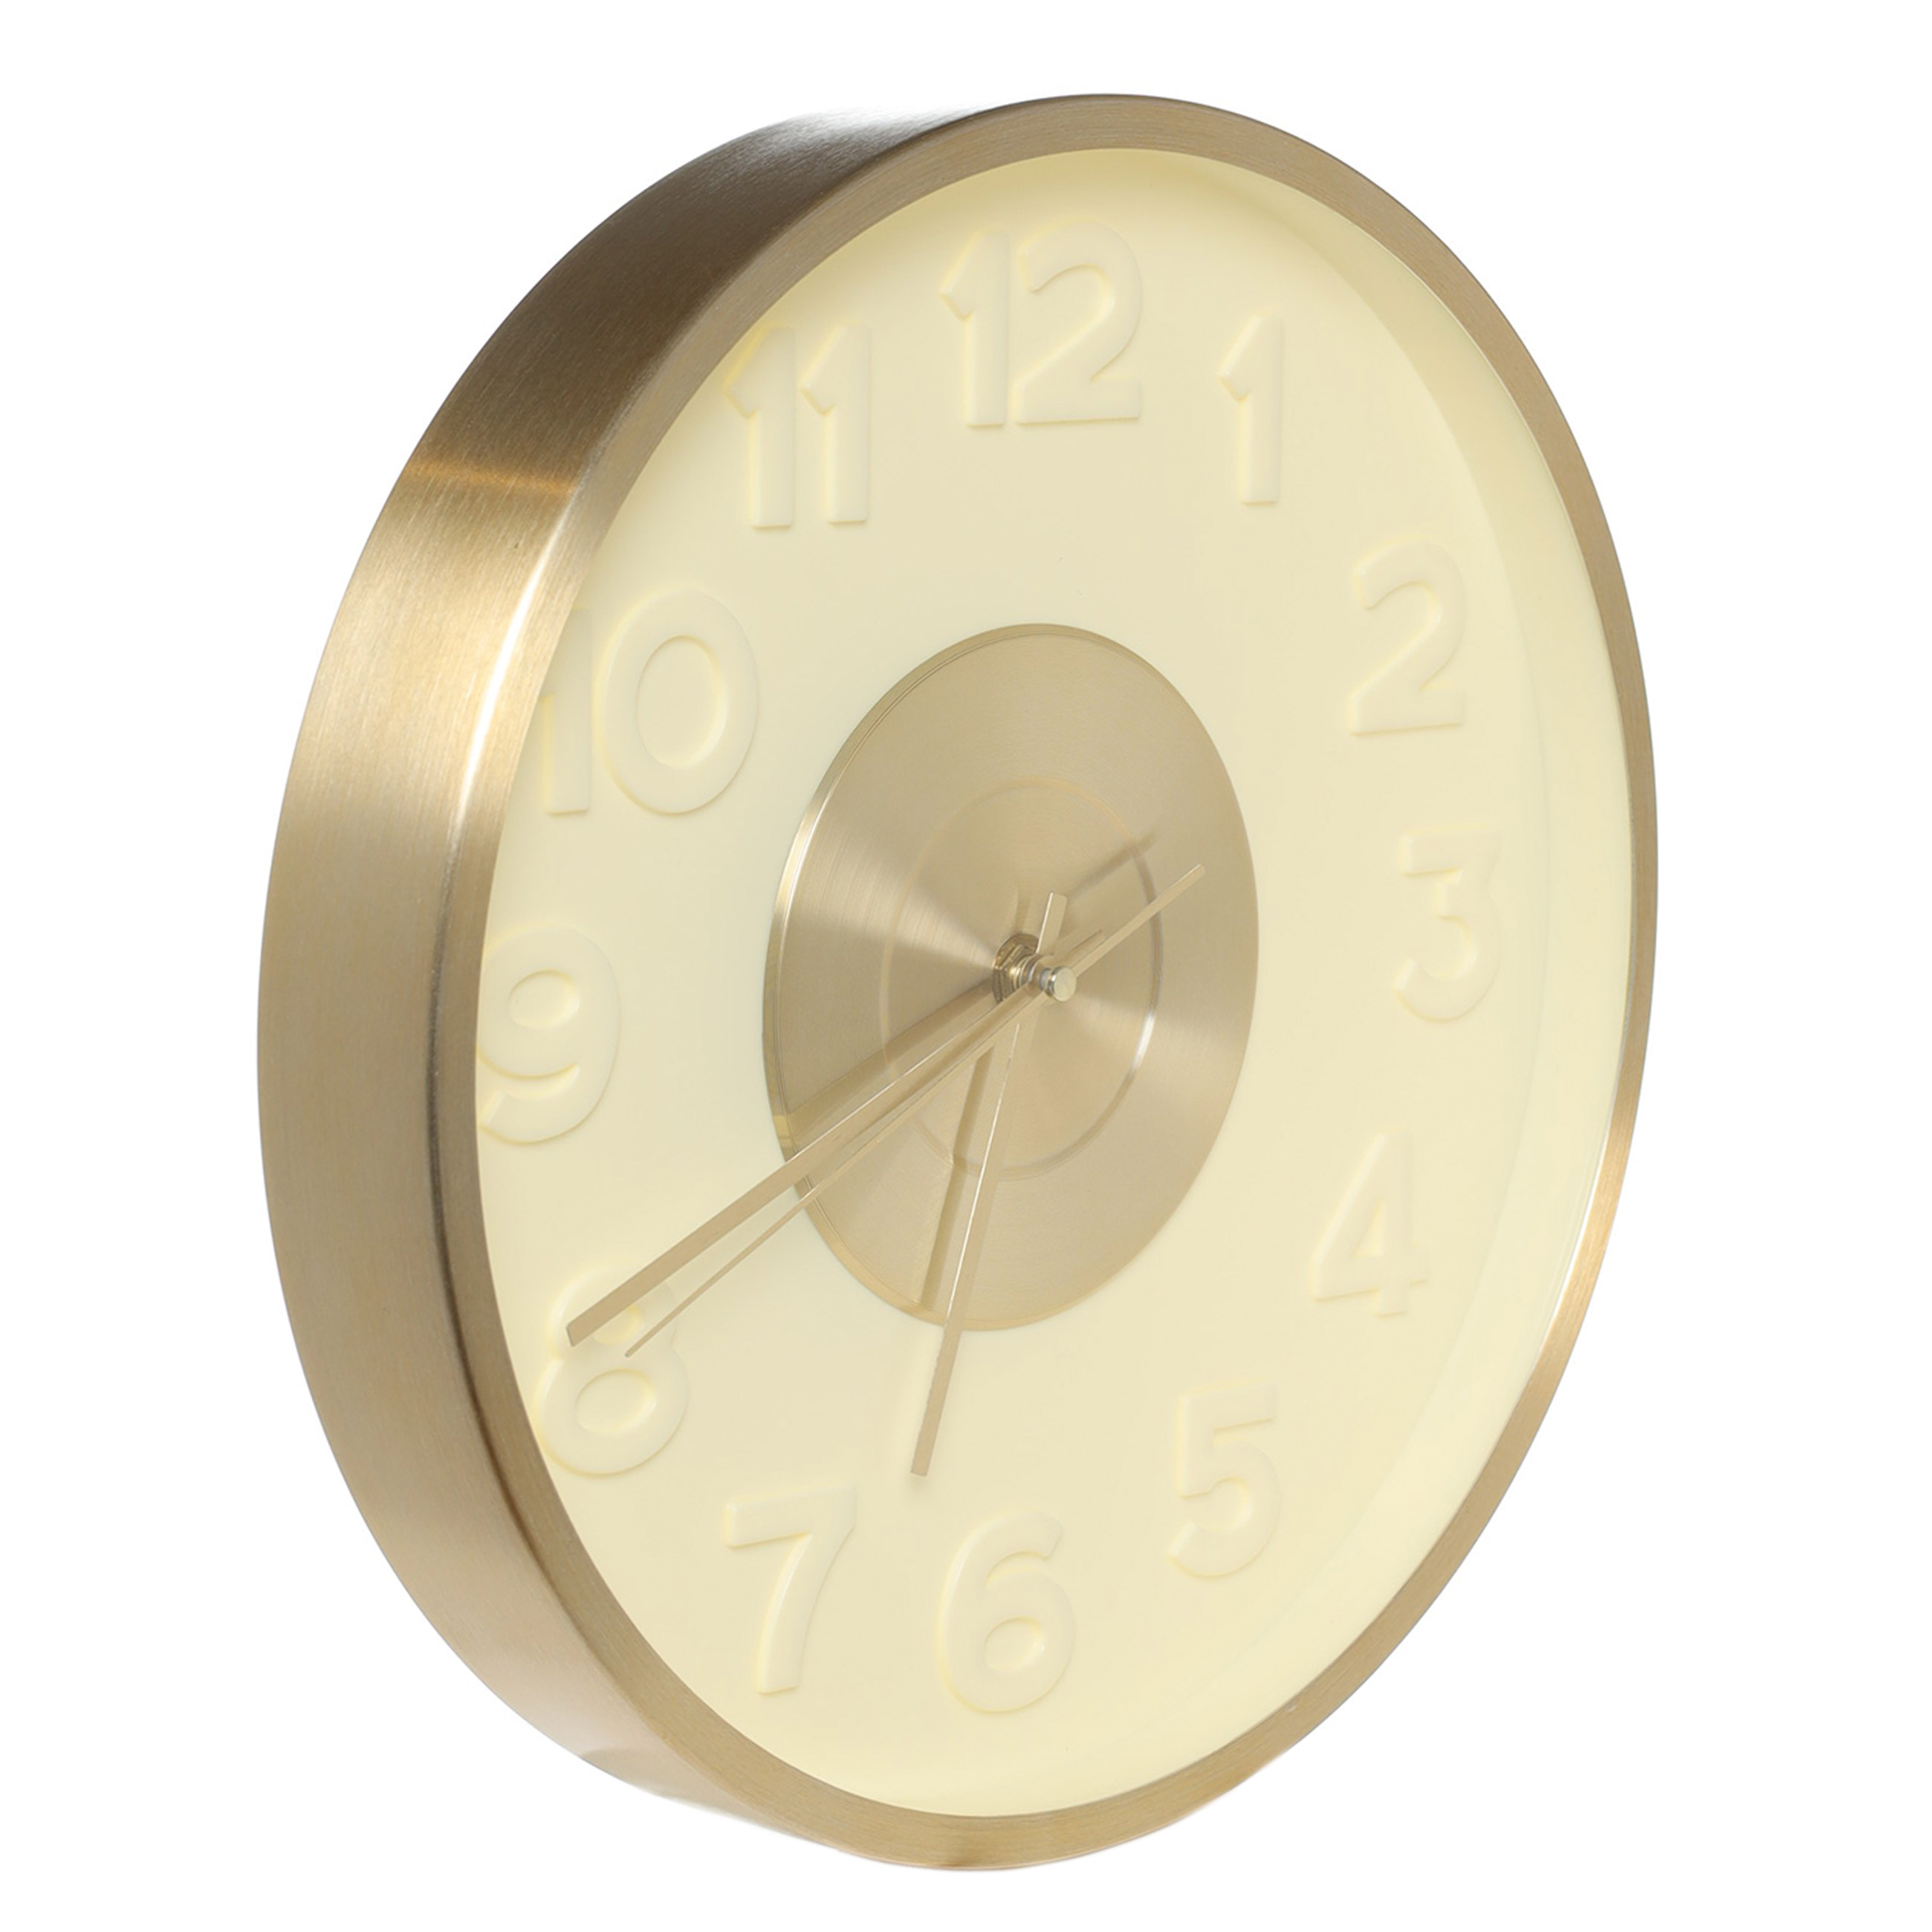 Часы настенные, 30 см, с подсветкой, пластик/стекло, круглые, золотистые, Fantastic gold изображение № 2